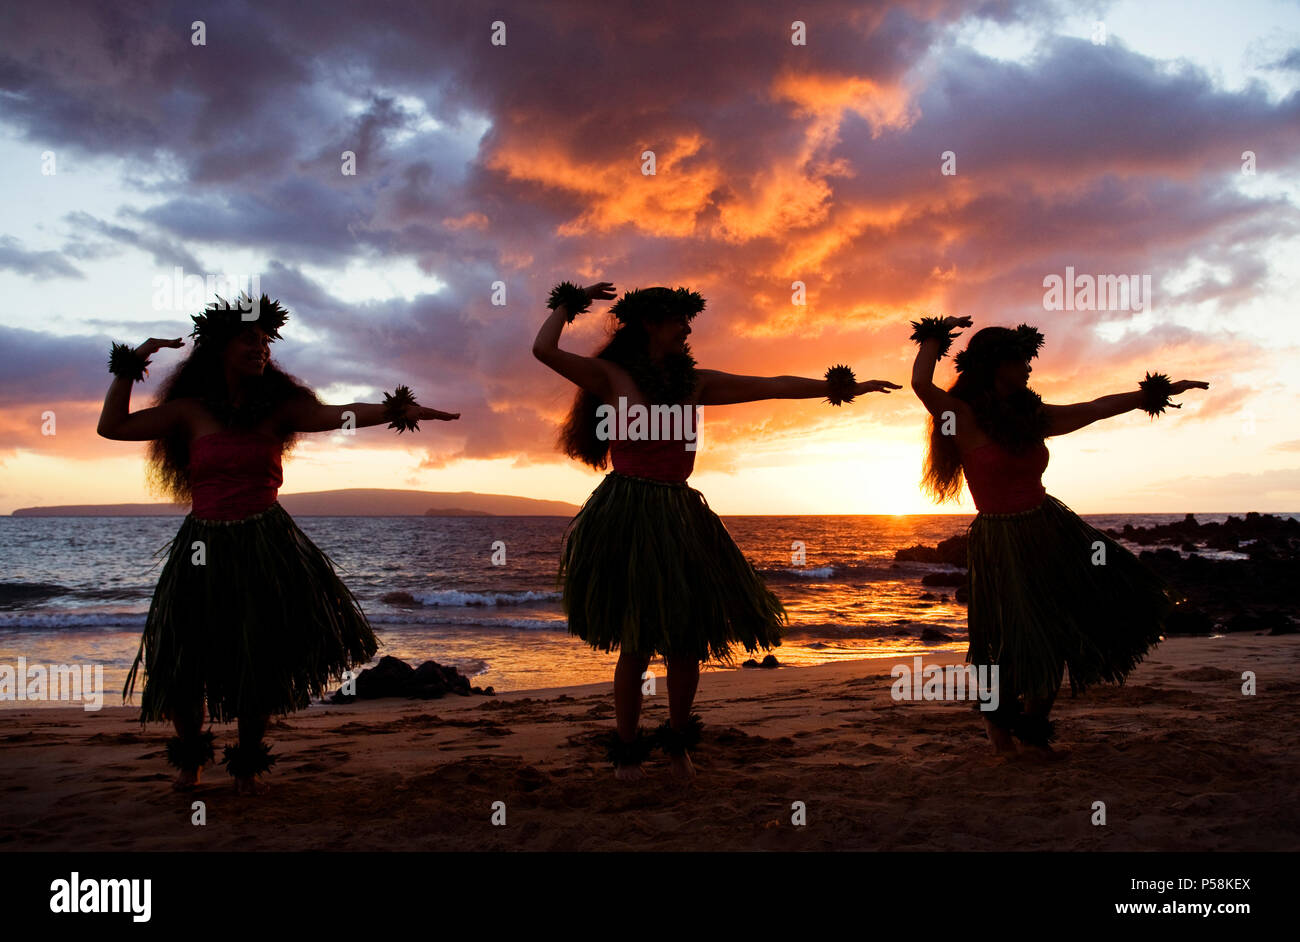 Three hula dancers at sunset at Palauea Beach, Maui, Hawaii. Stock Photo